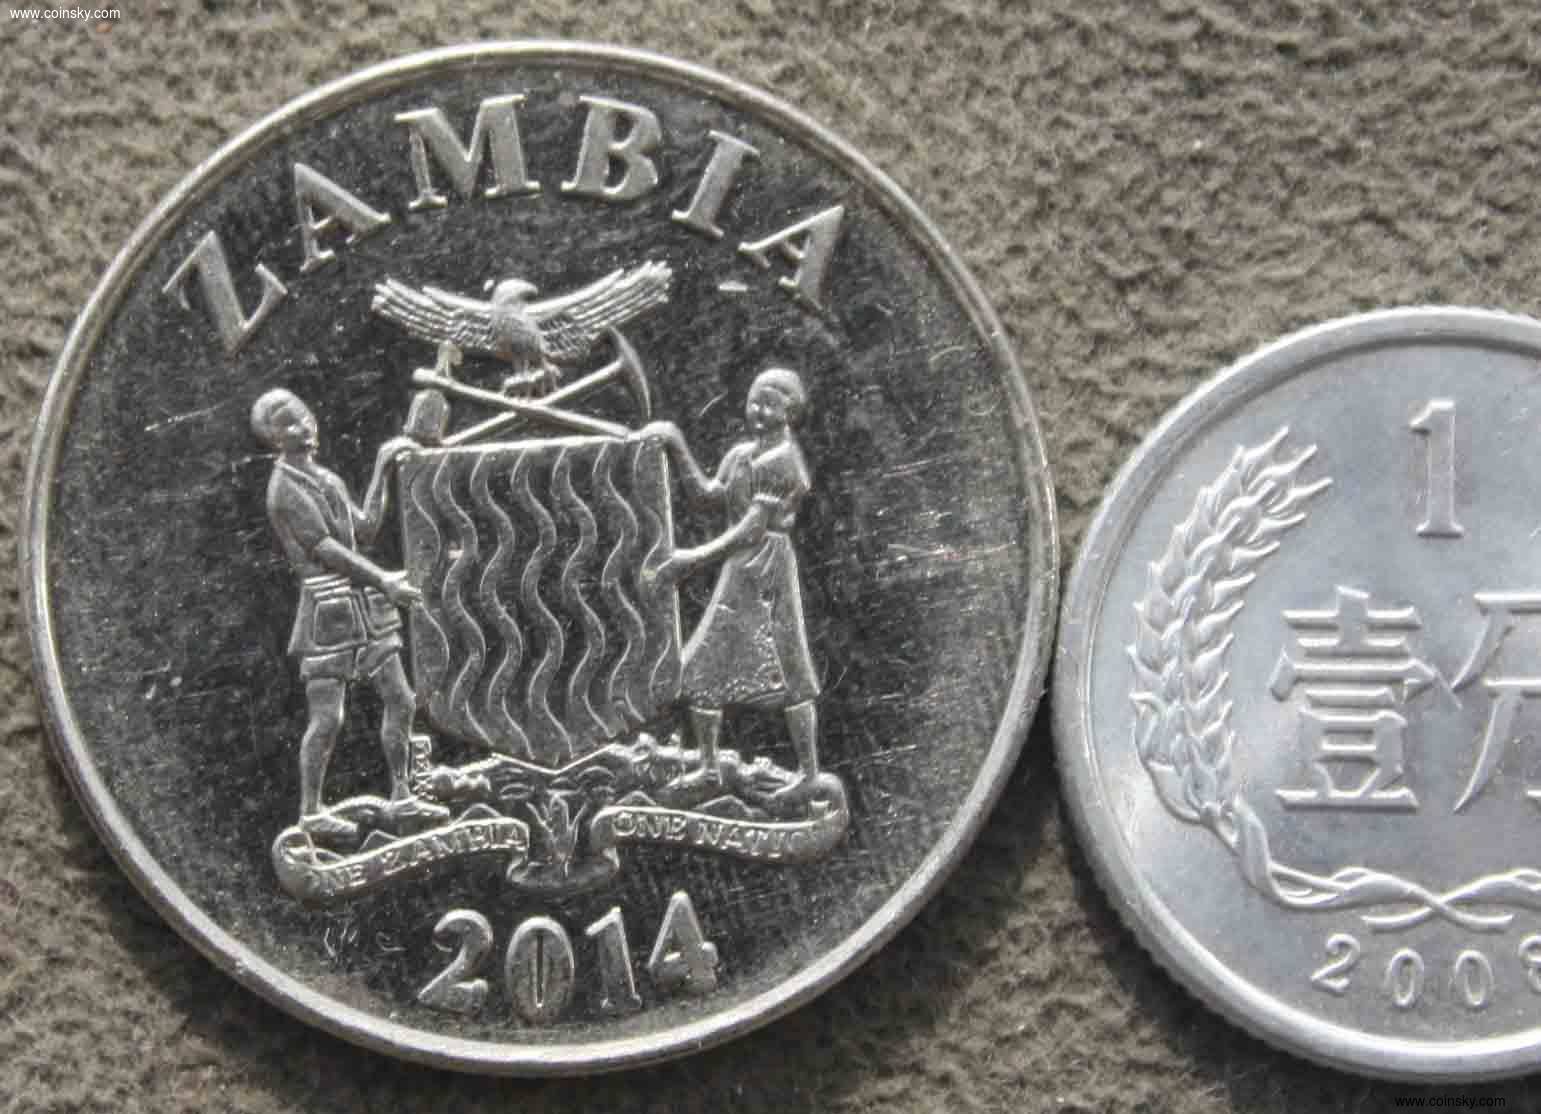 赞比亚 2014年 1克瓦查 镍币一枚